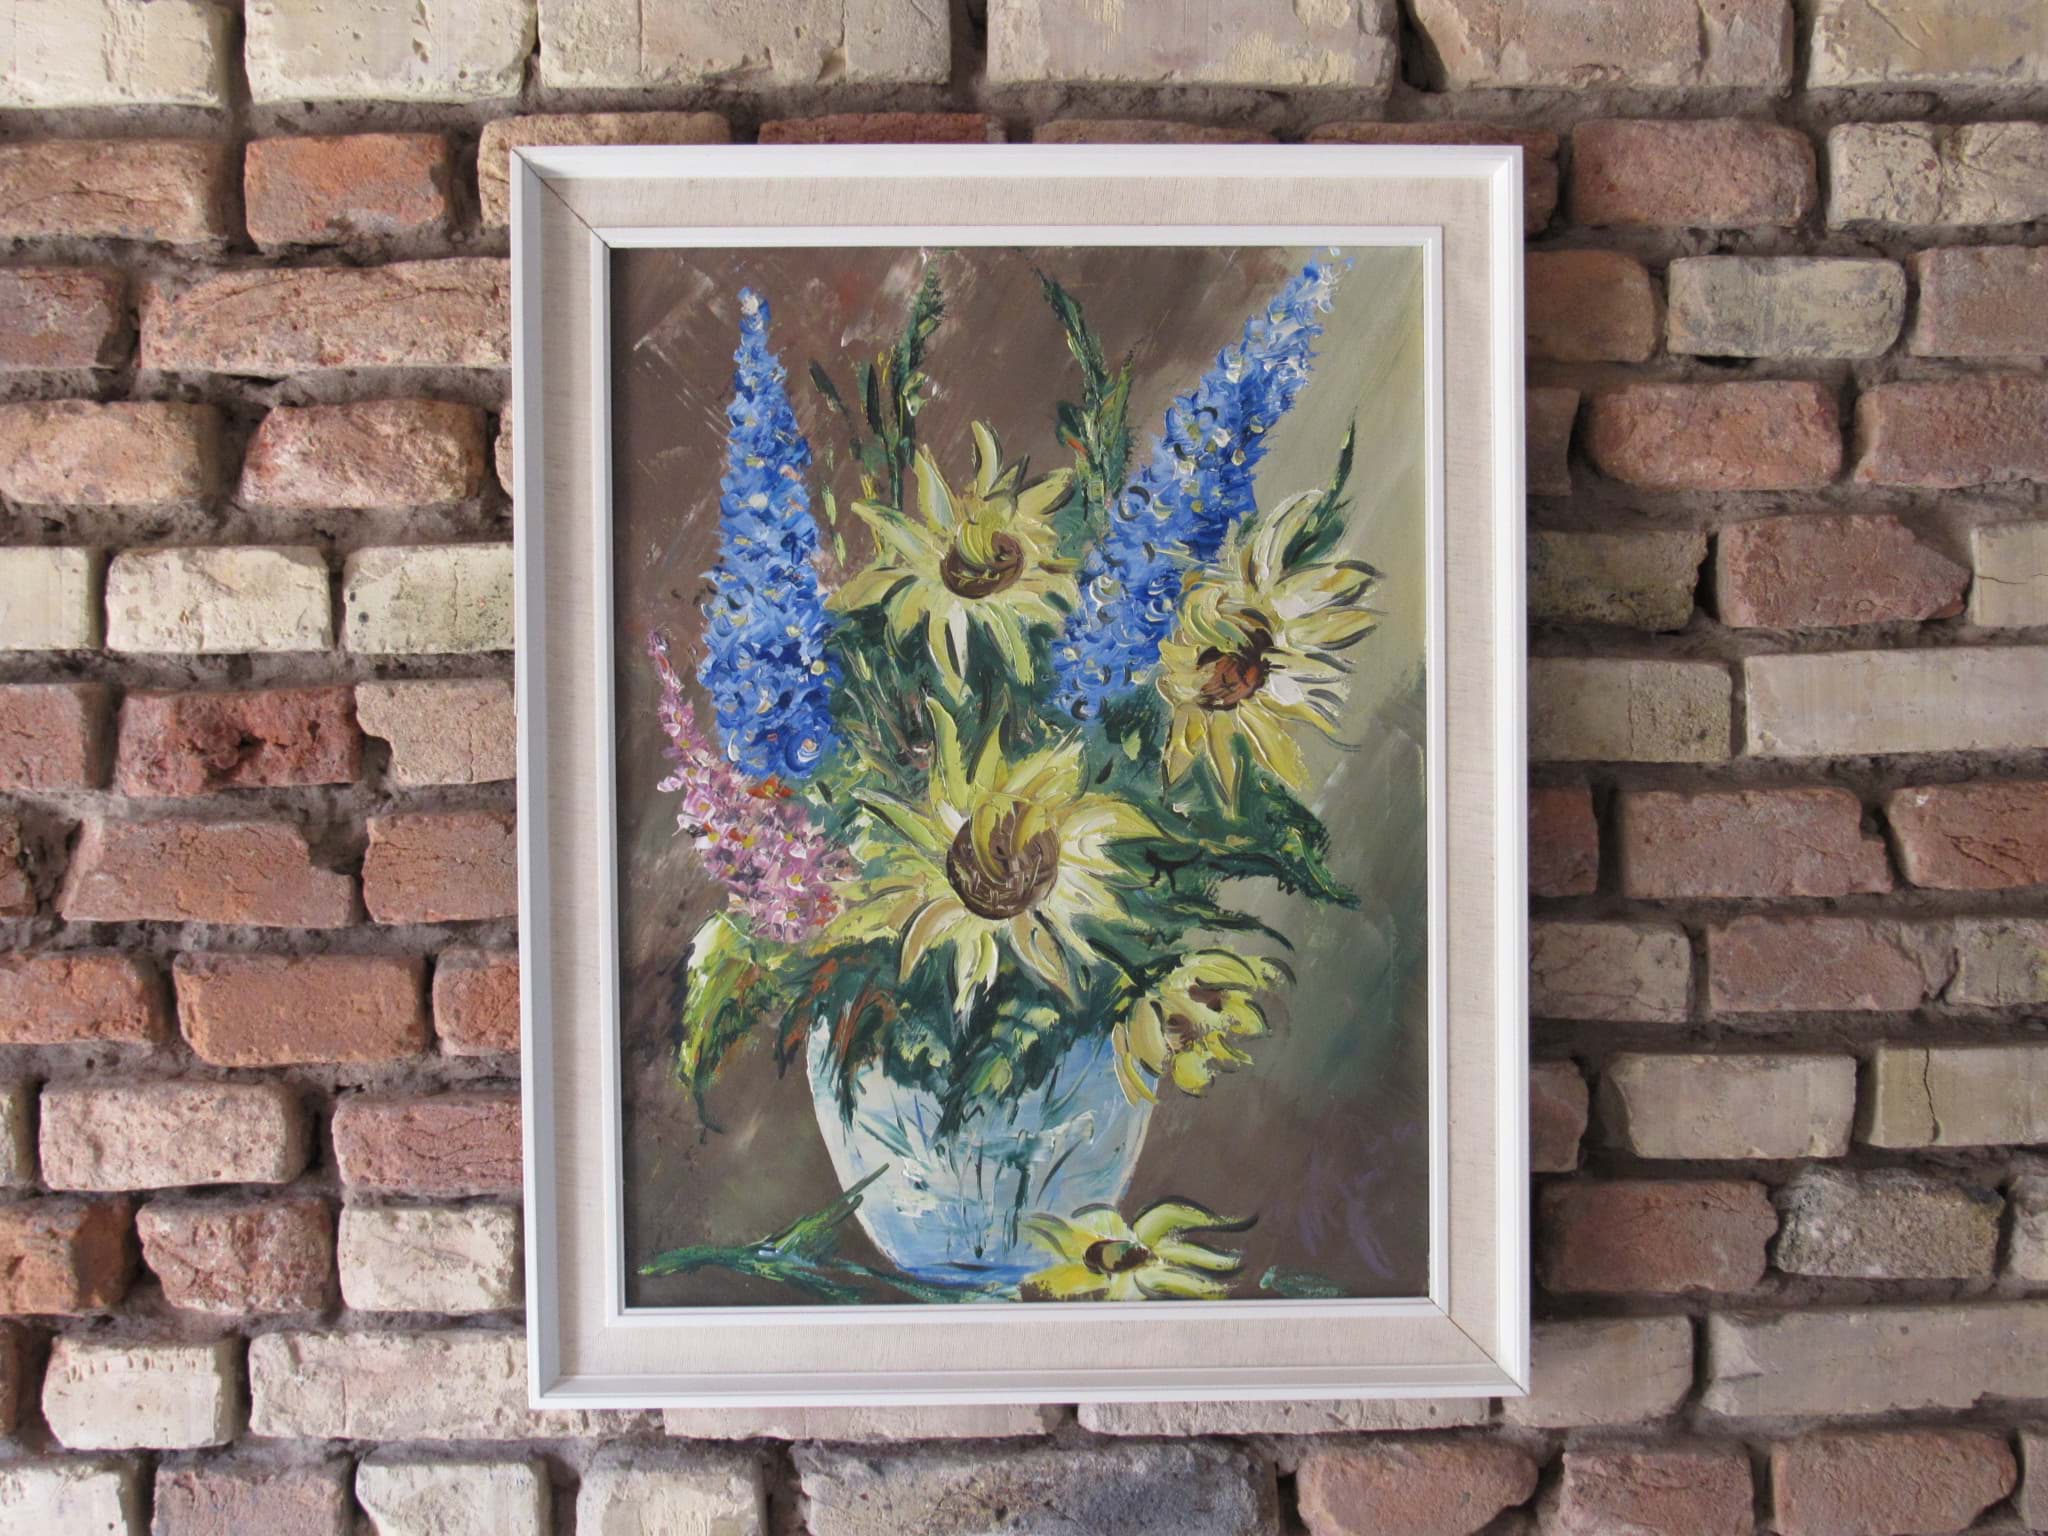 Picture of Gemälde Blumenstillleben mit Sonnenblumen & Gladiolen, Öl auf Leinwand, unleserlich signiert